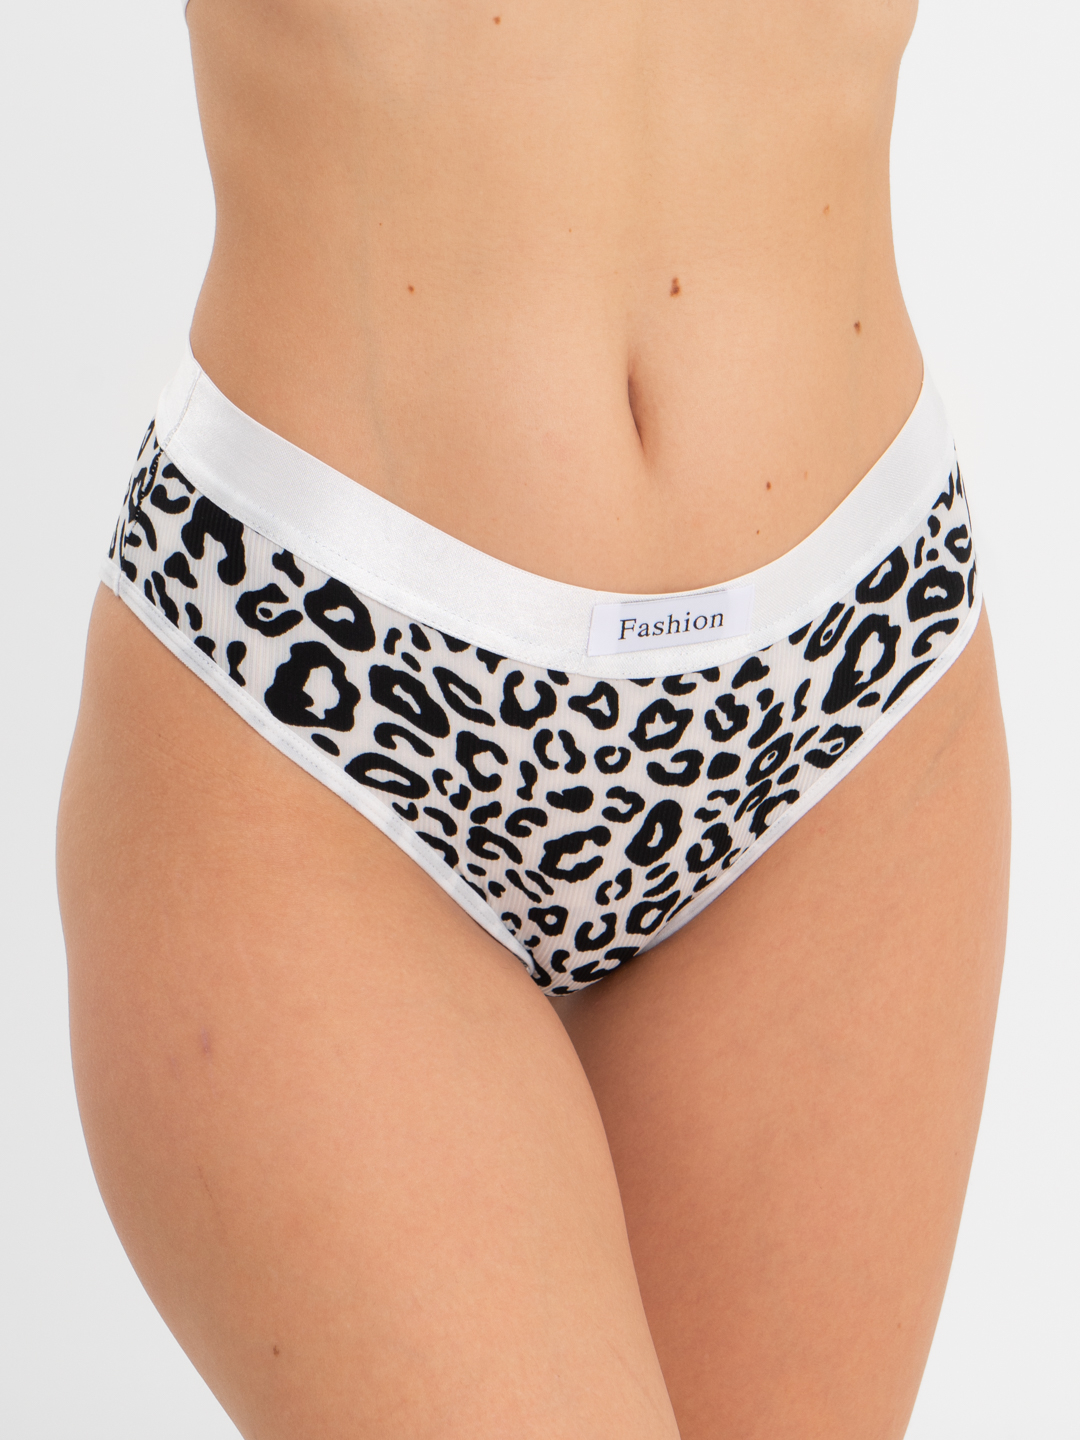 Женское нижнее белье леопардовое — купить в интернет-магазине Ламода